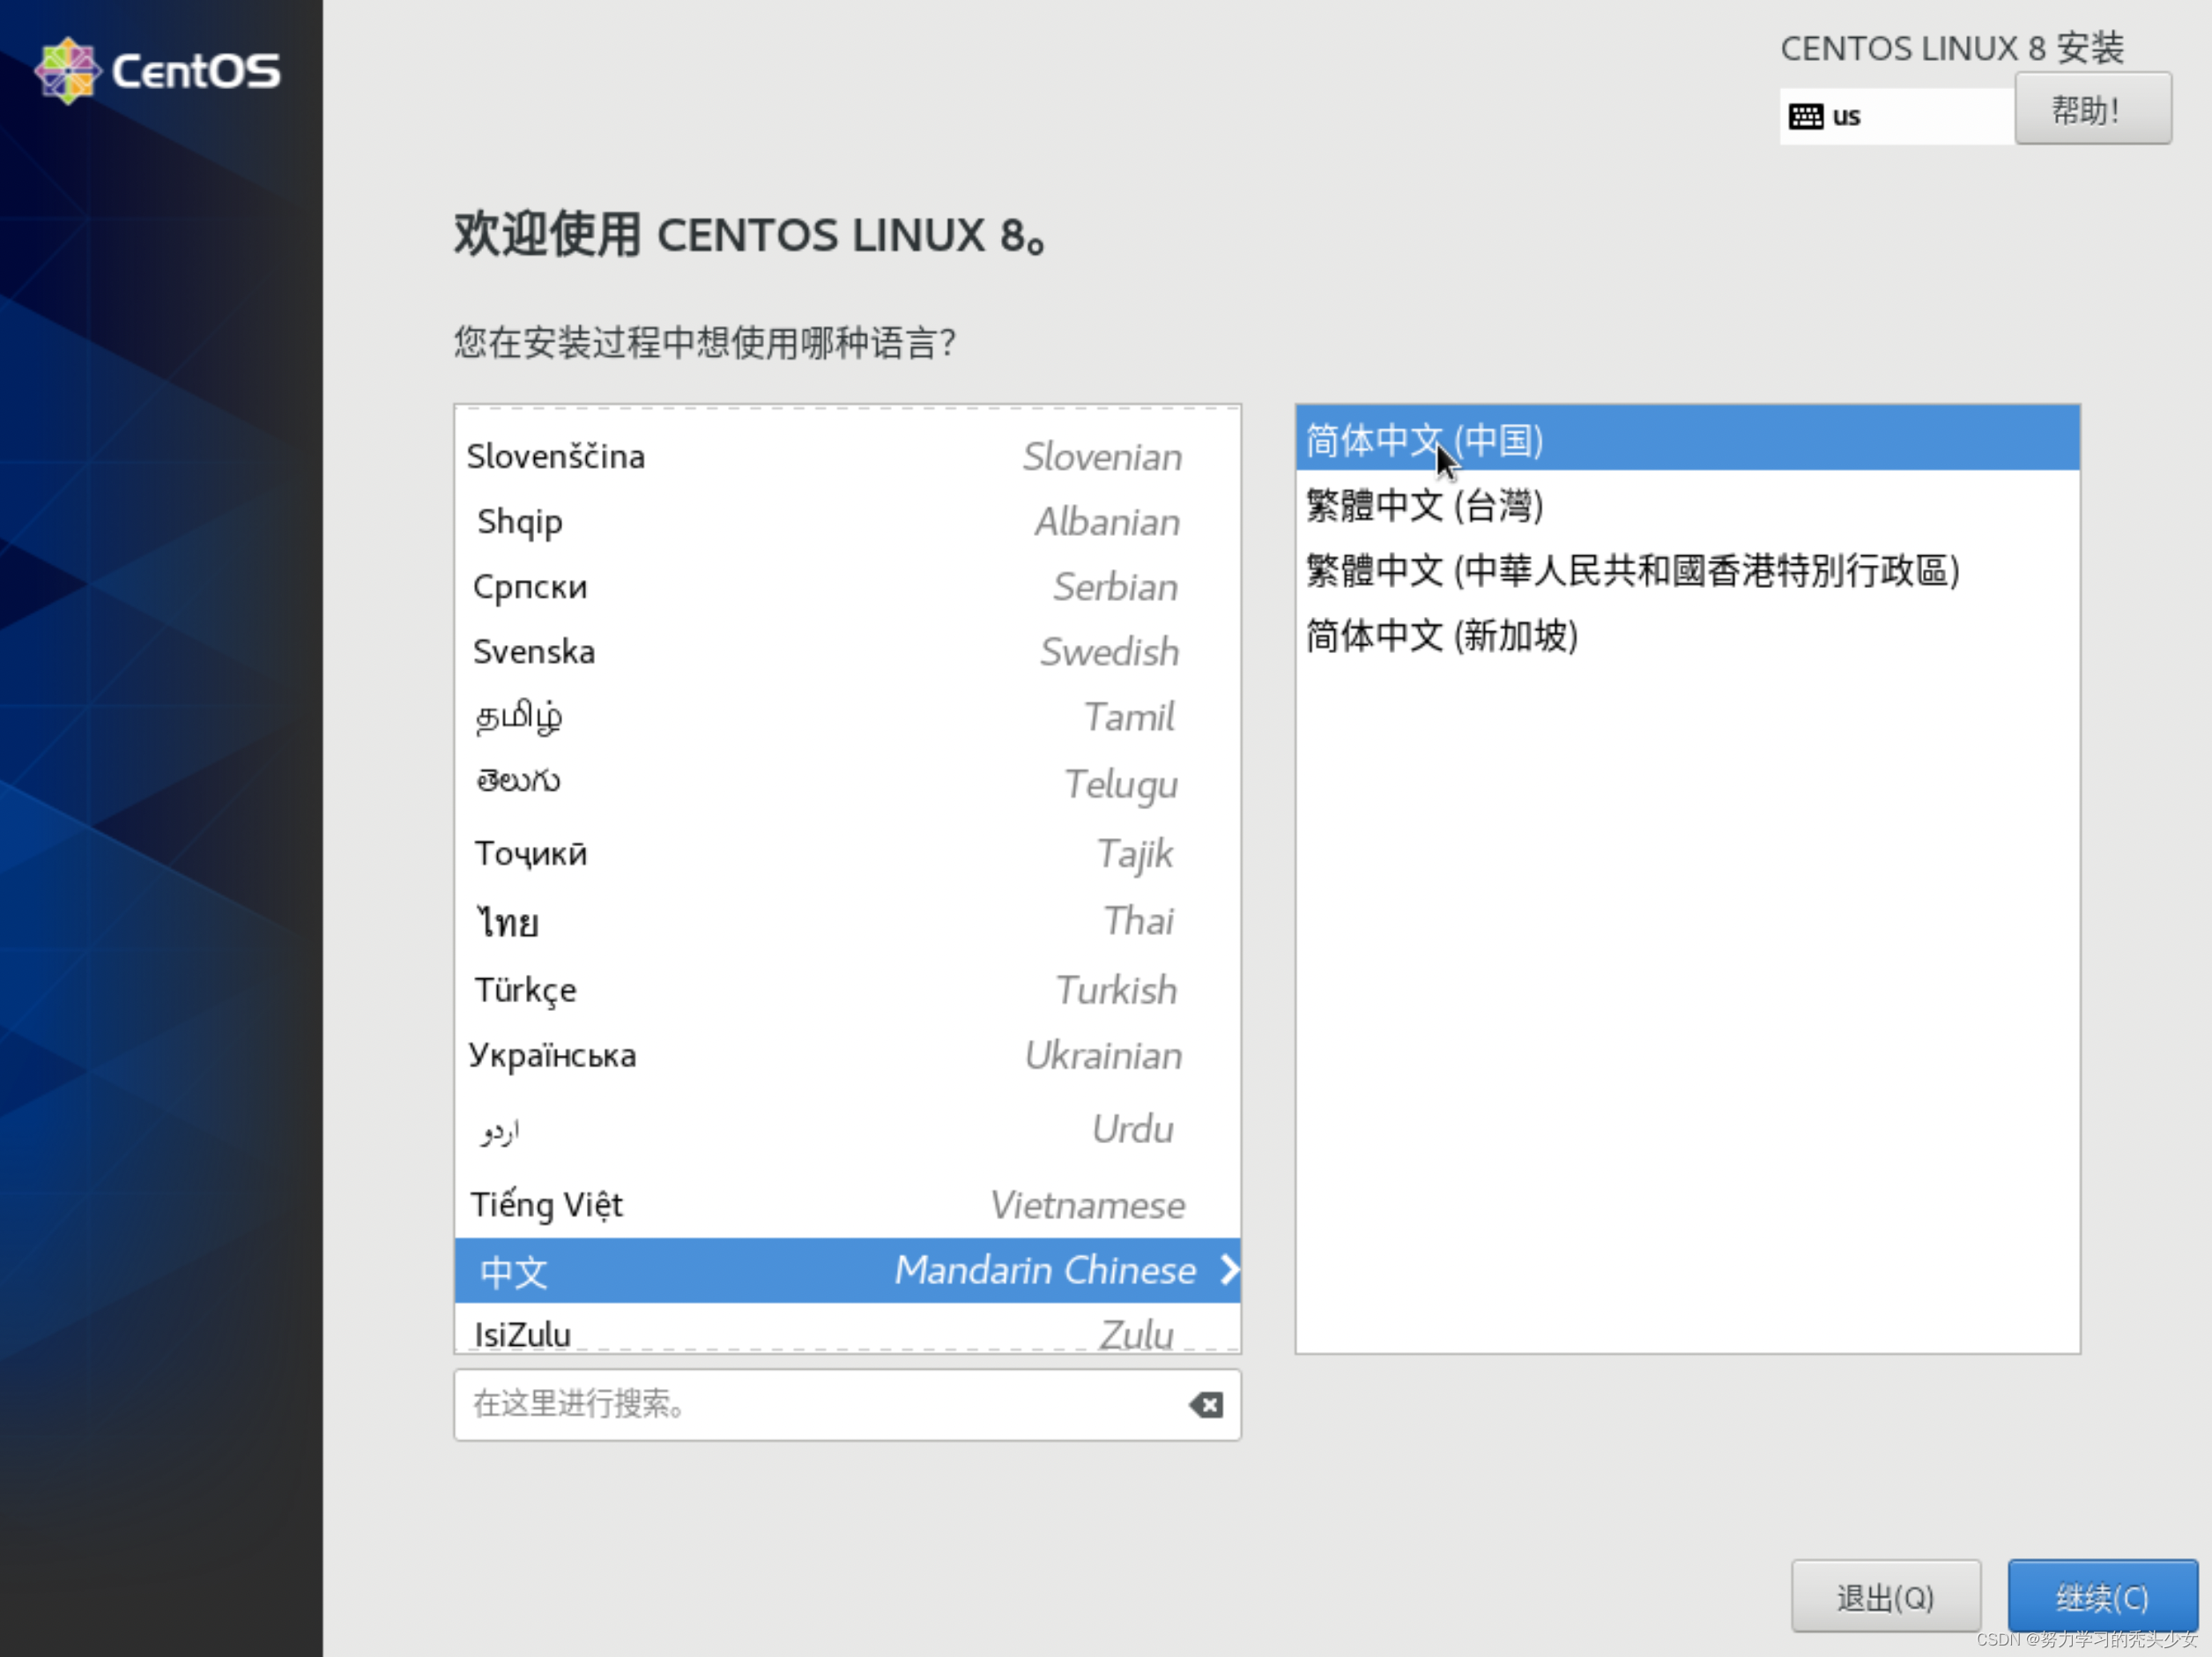 Choose Chinese language